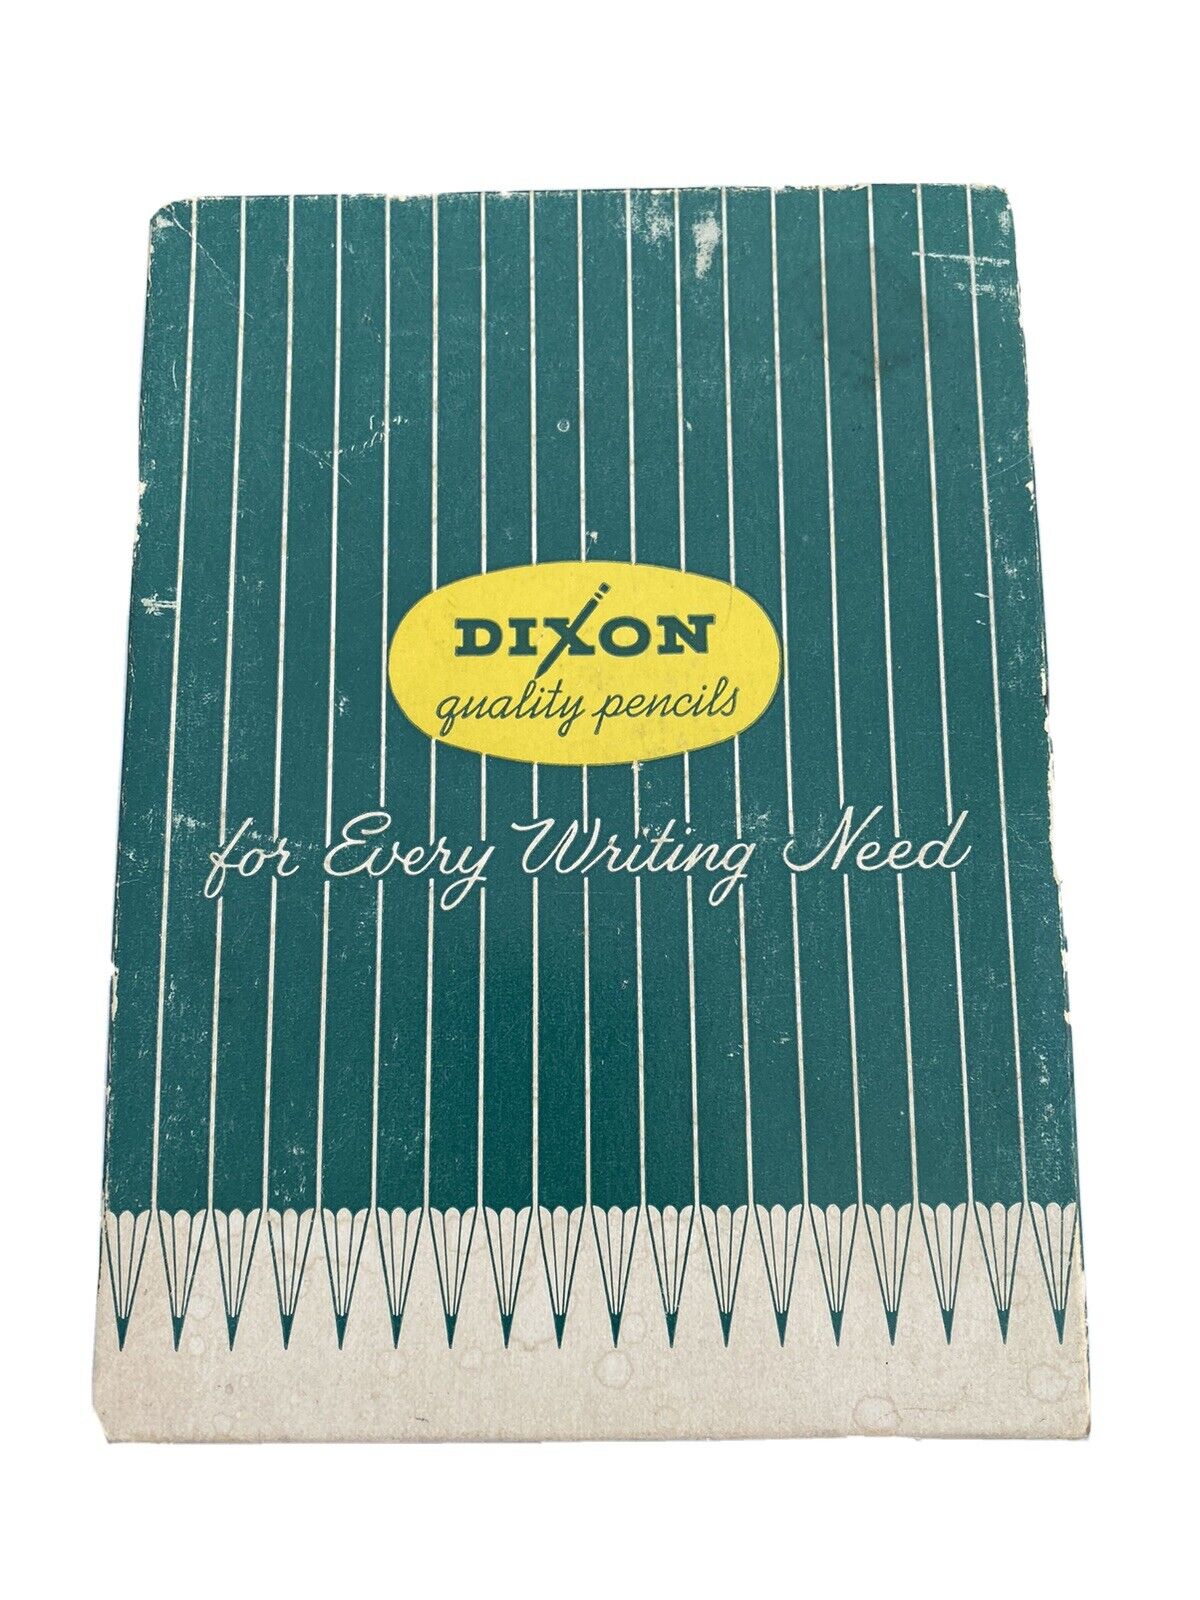 Vintage Dixon Writing Pencils 6 Dozen Case 